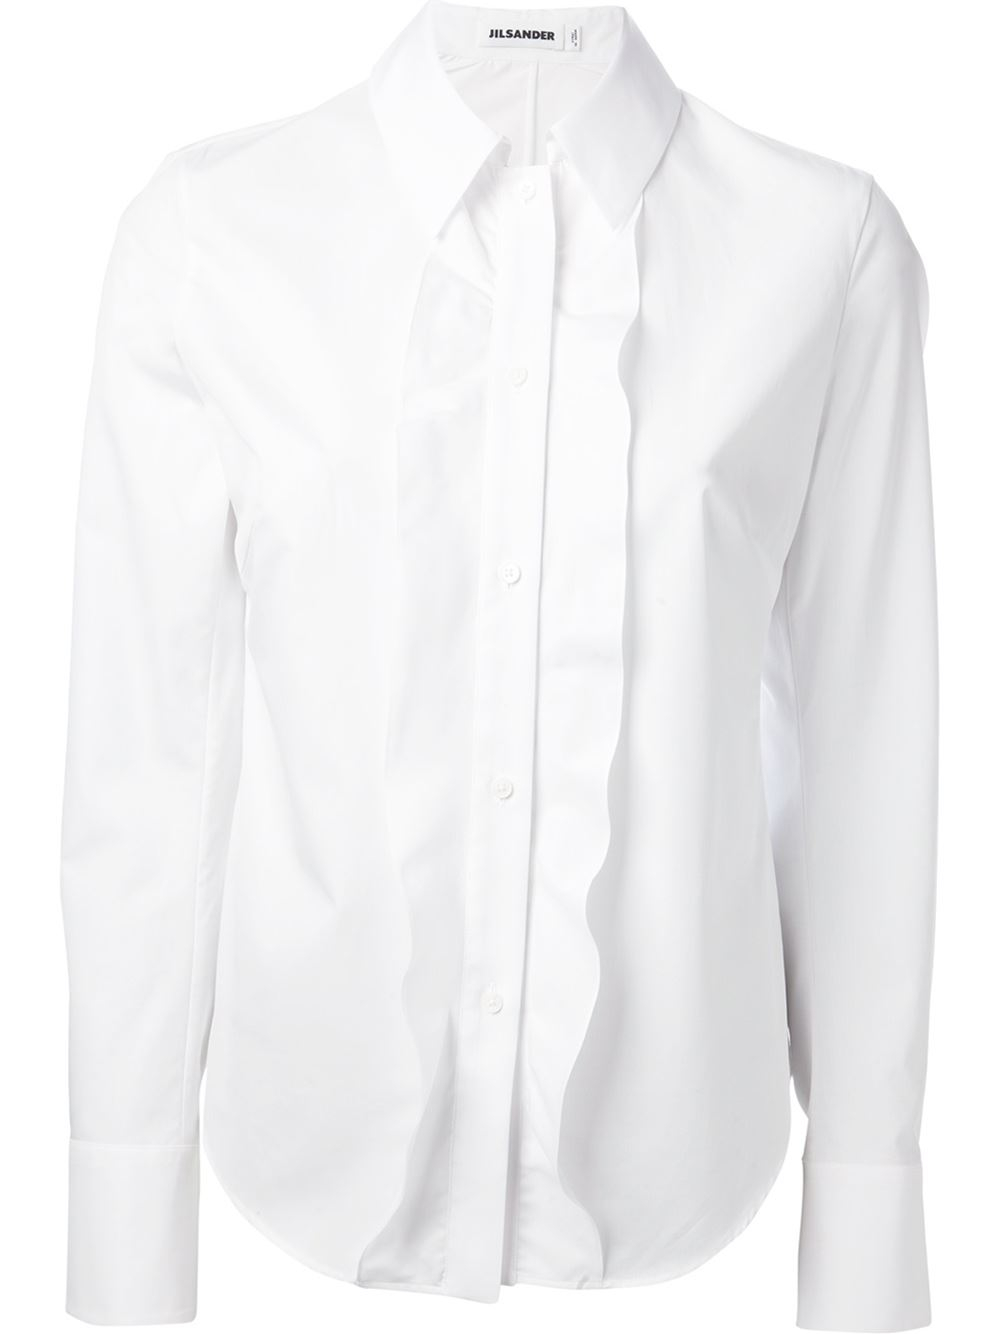 Lyst - Jil sander Ruffled Sleeveless Cotton Blouse in White